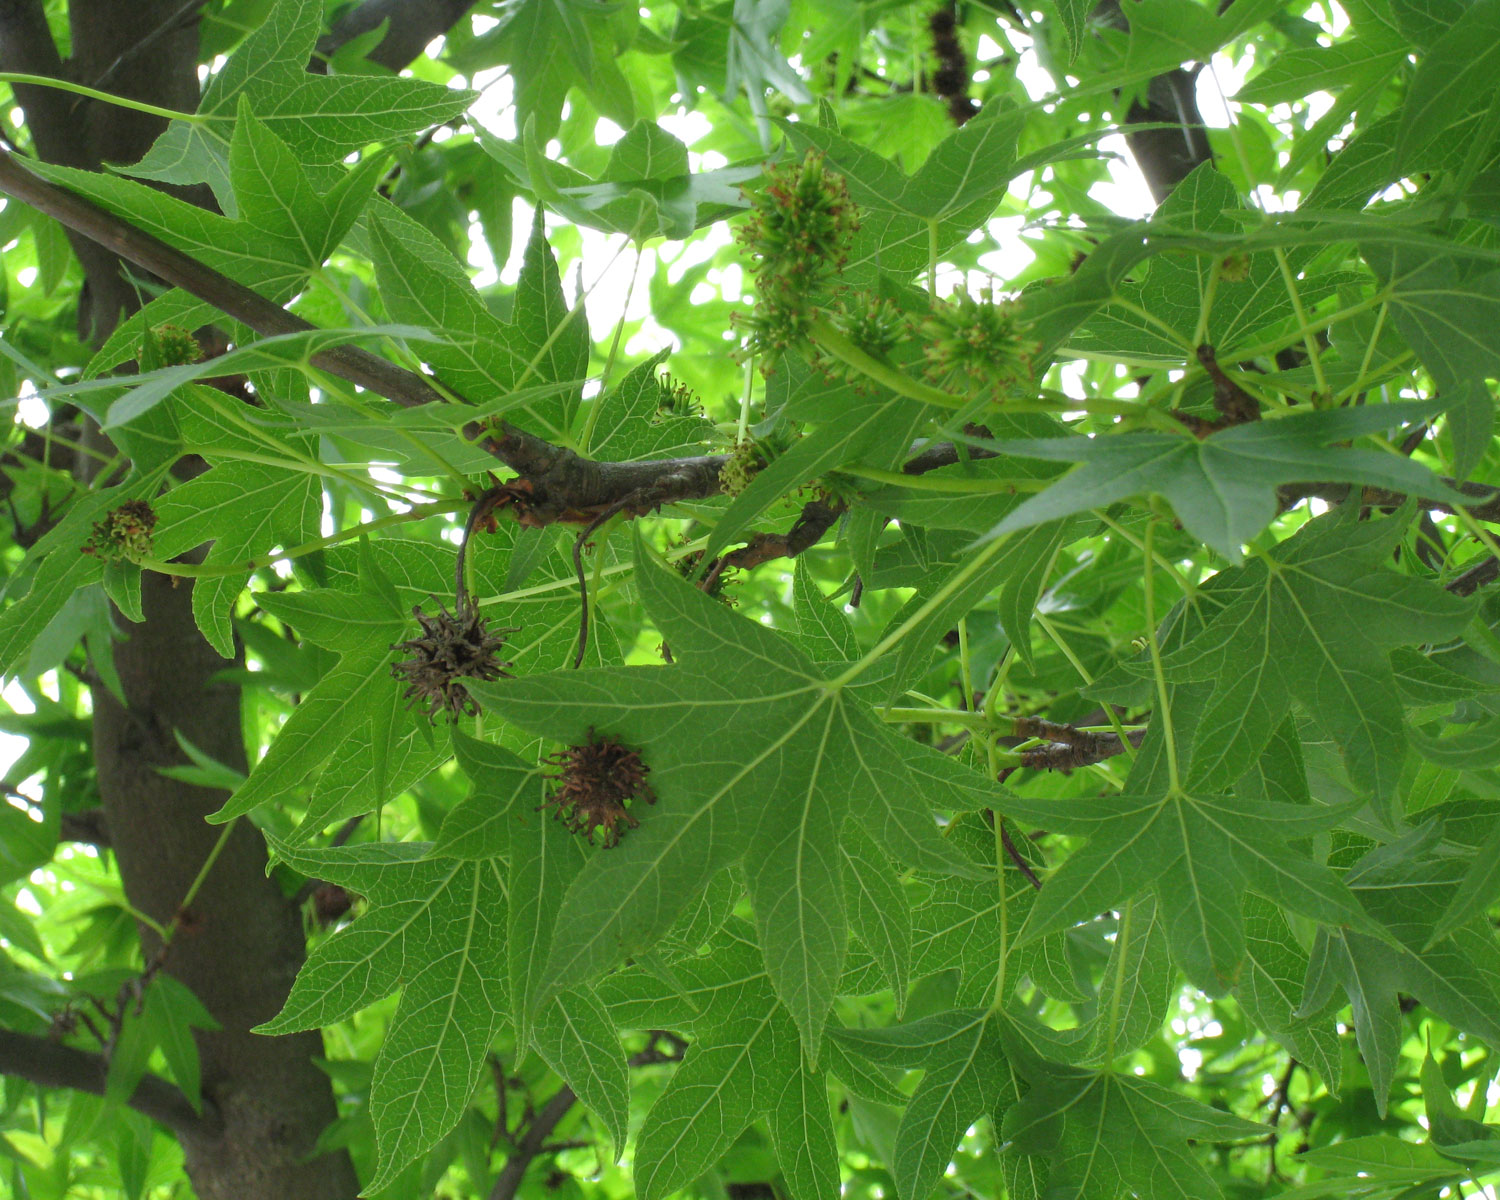  Sweetgum leaves  (via Flickr - Wendy Cutler)  